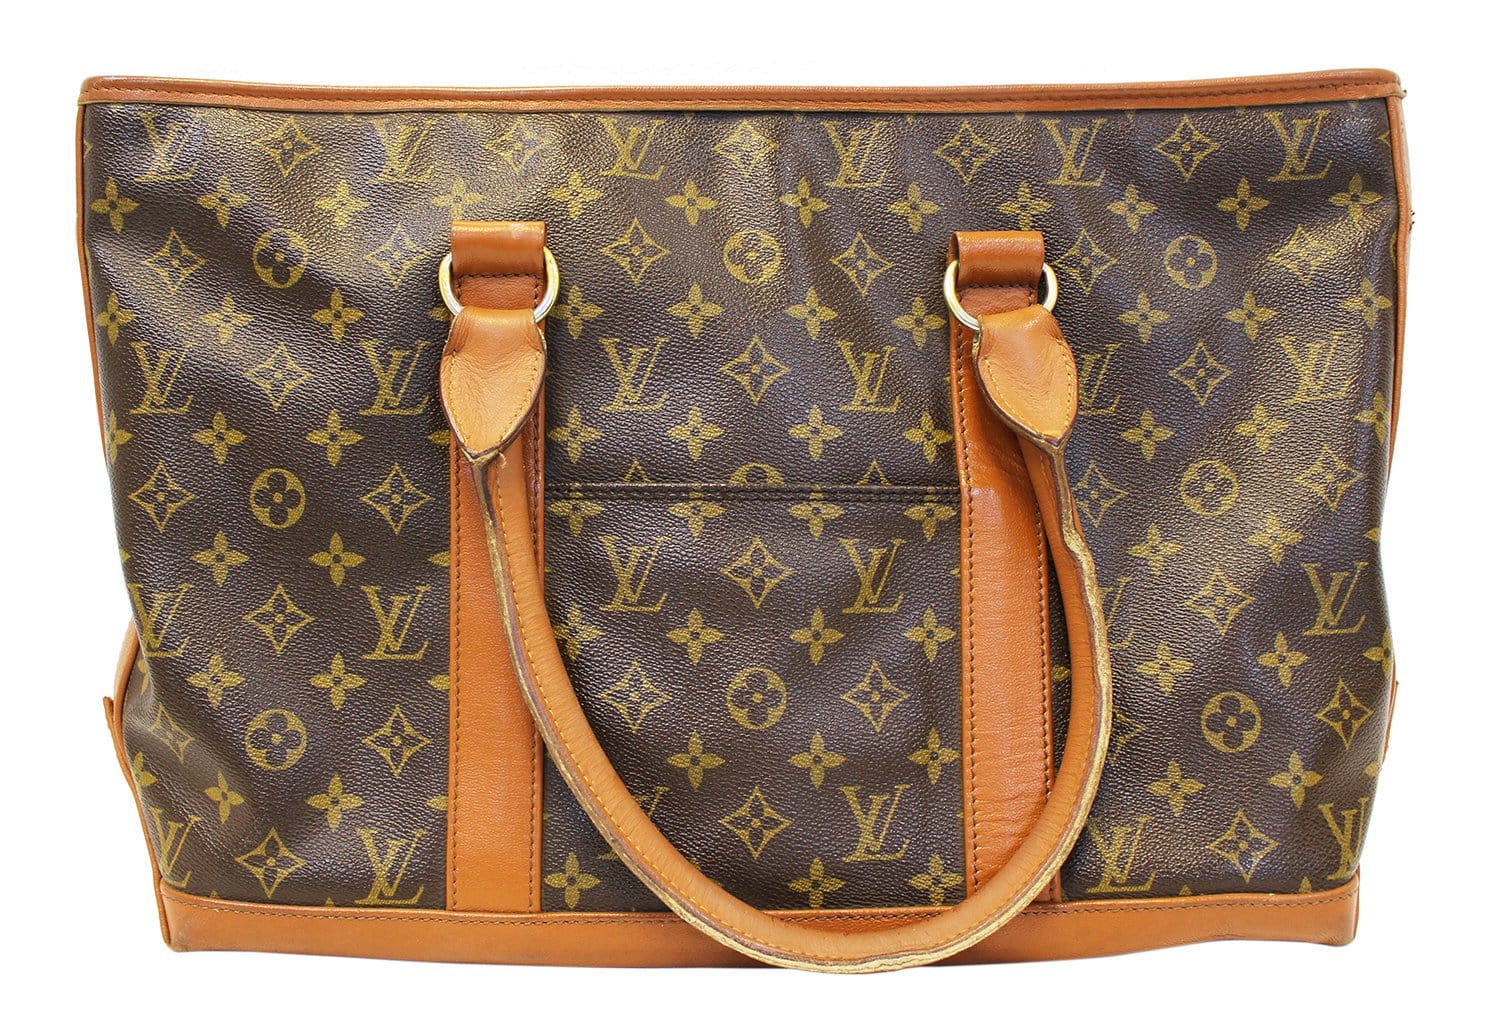 LV bag - Louis Vuitton - vintage - style - classic - luxury - antique -  amazi…  Louis vuitton handbags sale, Cheap louis vuitton handbags, Cheap louis  vuitton bags